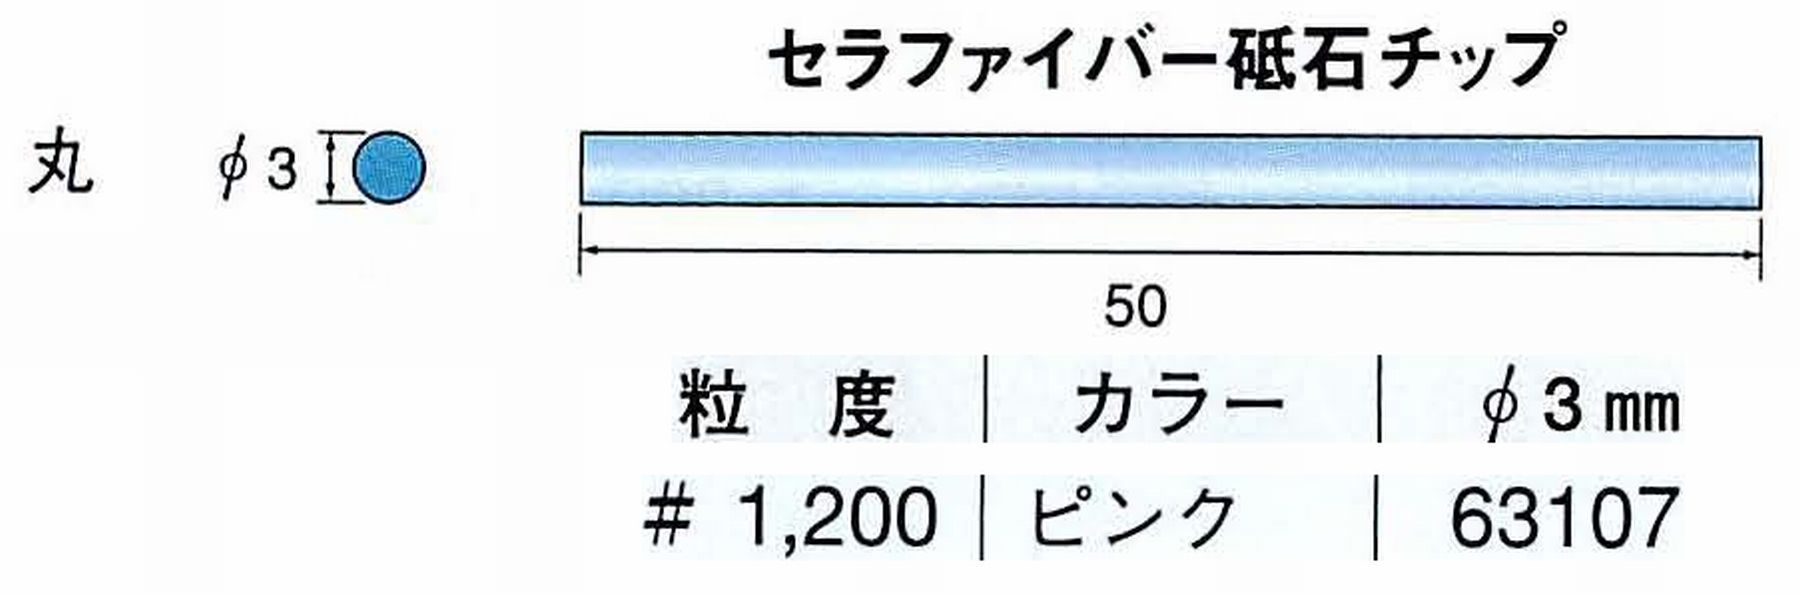 ナカニシ/NAKANISHI 超音波研磨装置 シーナスneo/シーナス専用工具 セラファイバー砥石チップ 丸 63107